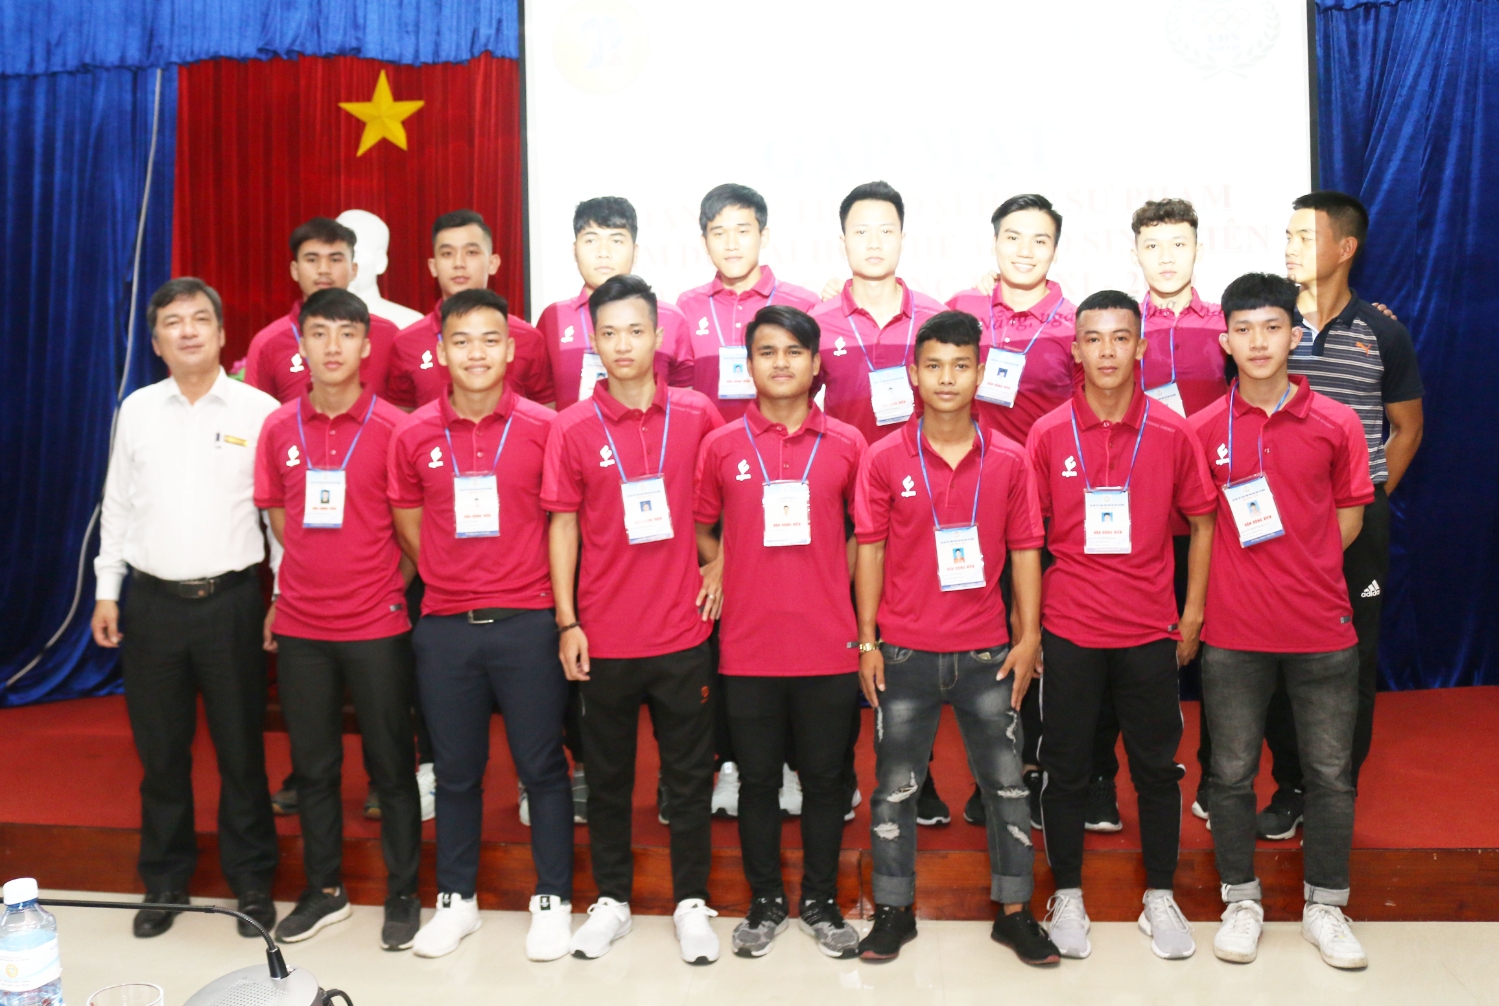 Đại hội Thể thao Sinh viên Đại học Đà Nẵng lần thứ XI – 2019: “Nhà trường luôn bên cạnh các em trong từng trận đấu”